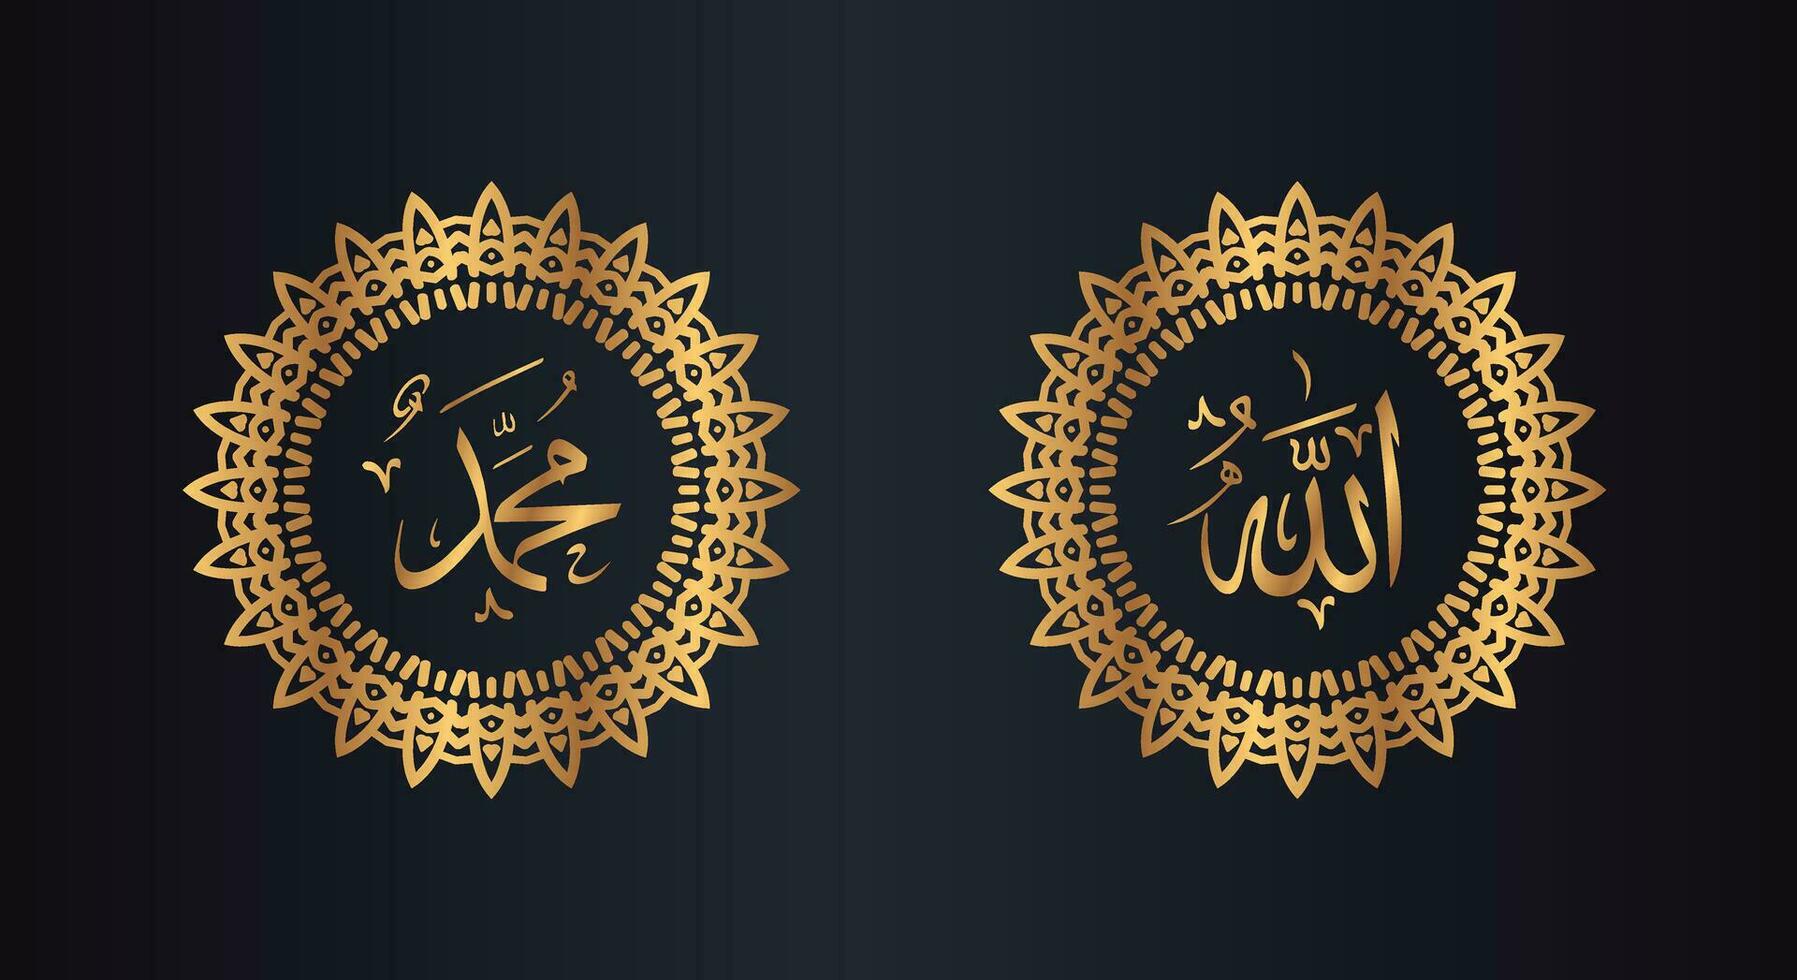 Allah Muhammad Arabisch Kalligraphie mit Kreis Rahmen und golden Farbe mit schwarz Hintergrund vektor